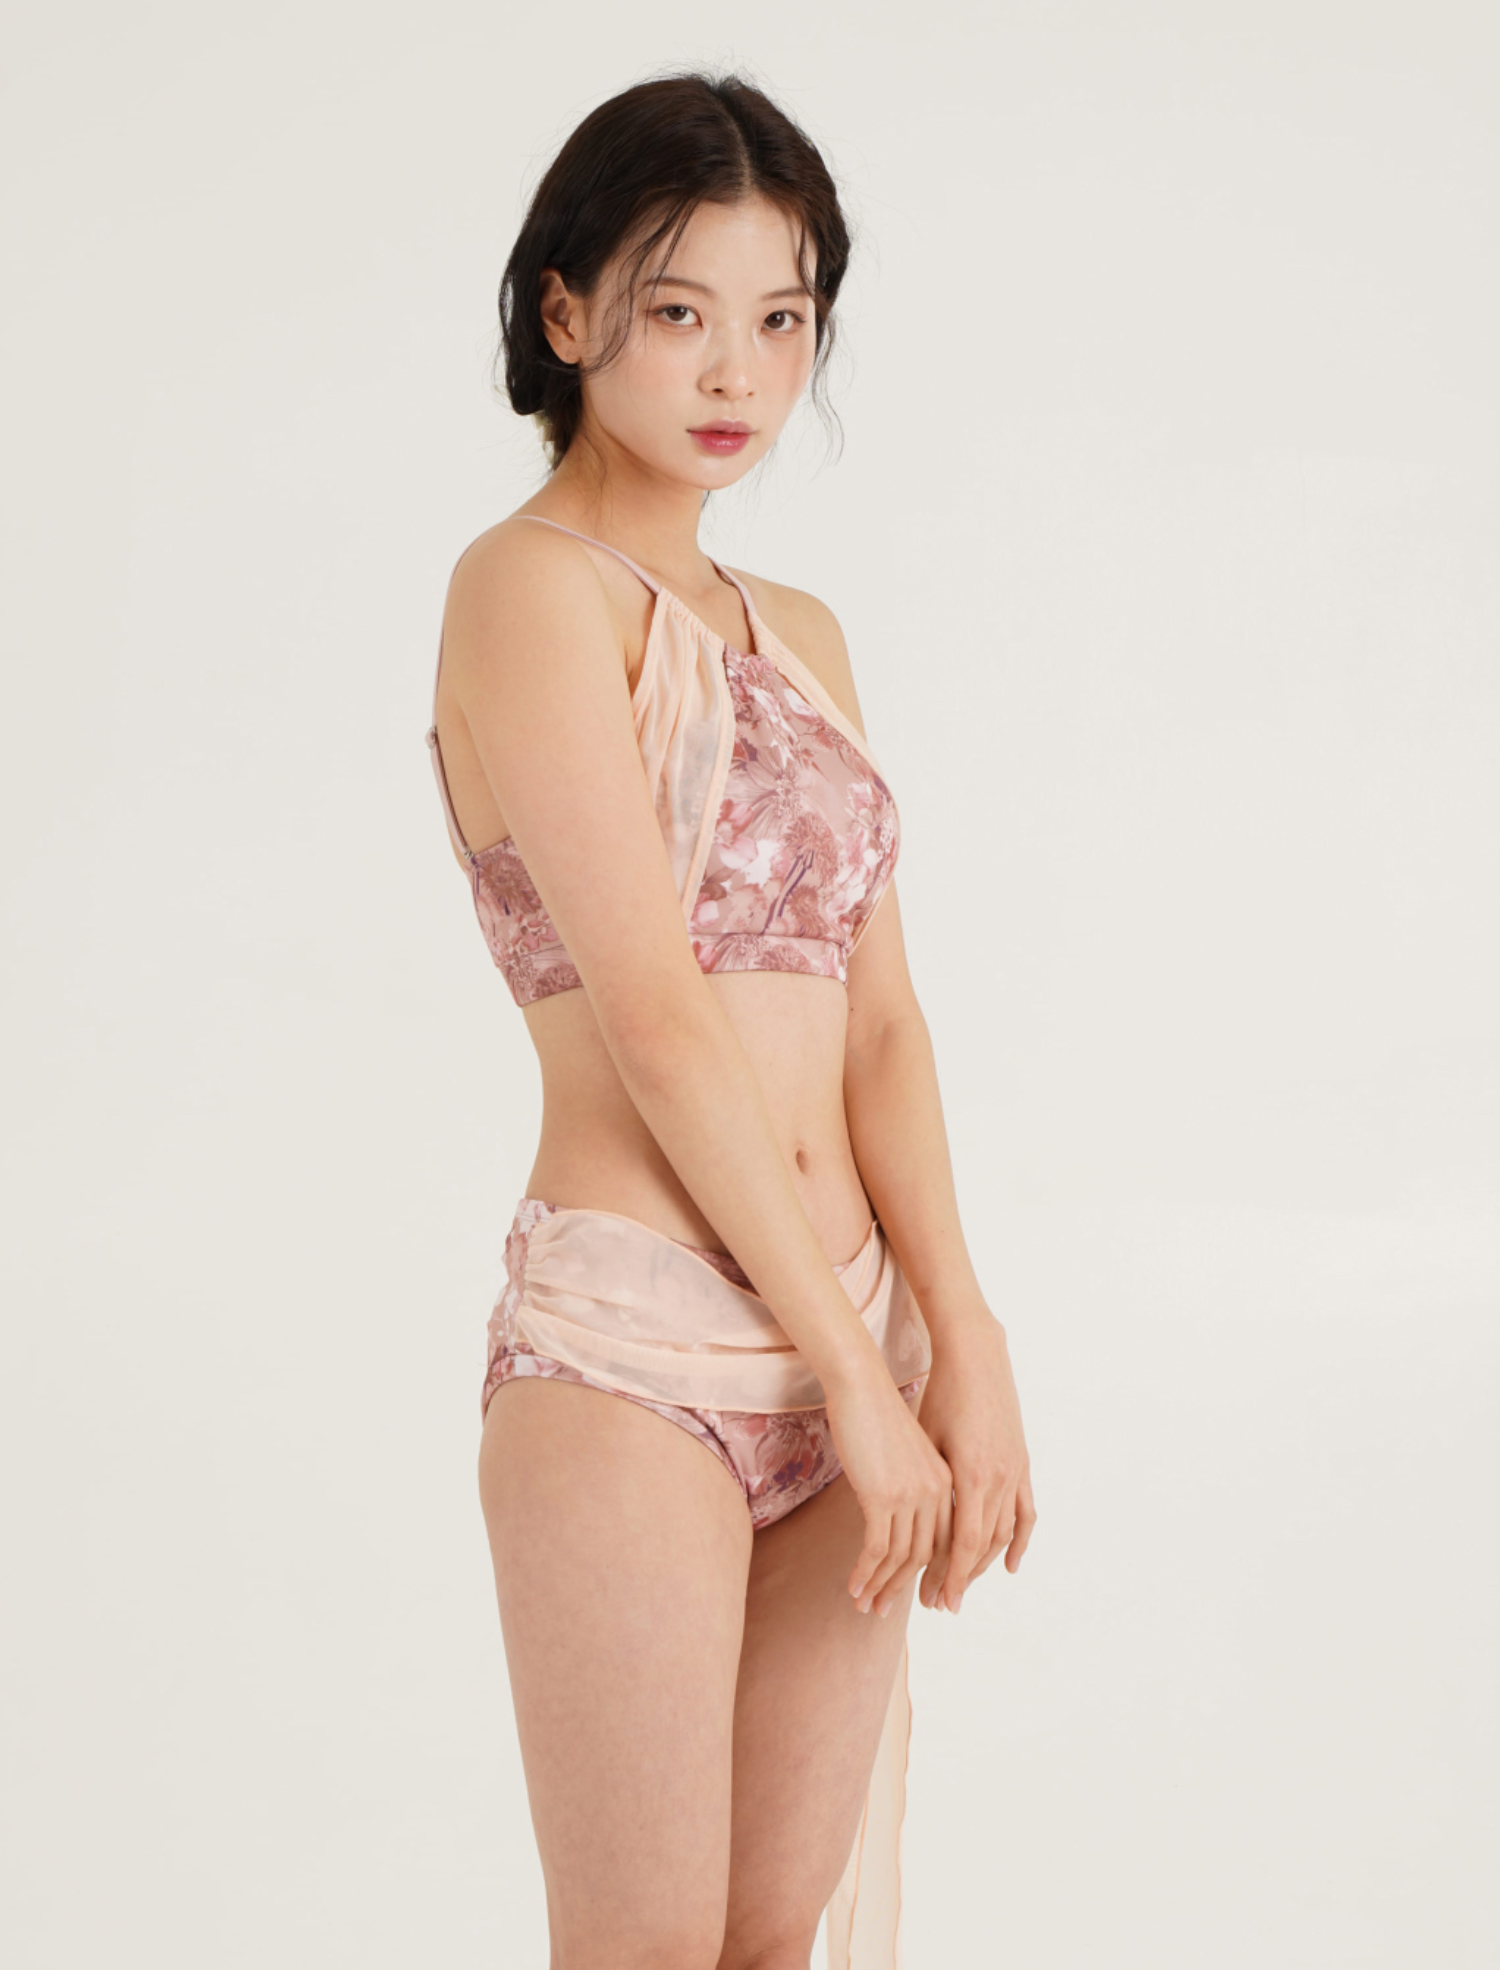 Swimsuit/Underwear Model Wearing Image-S22L8